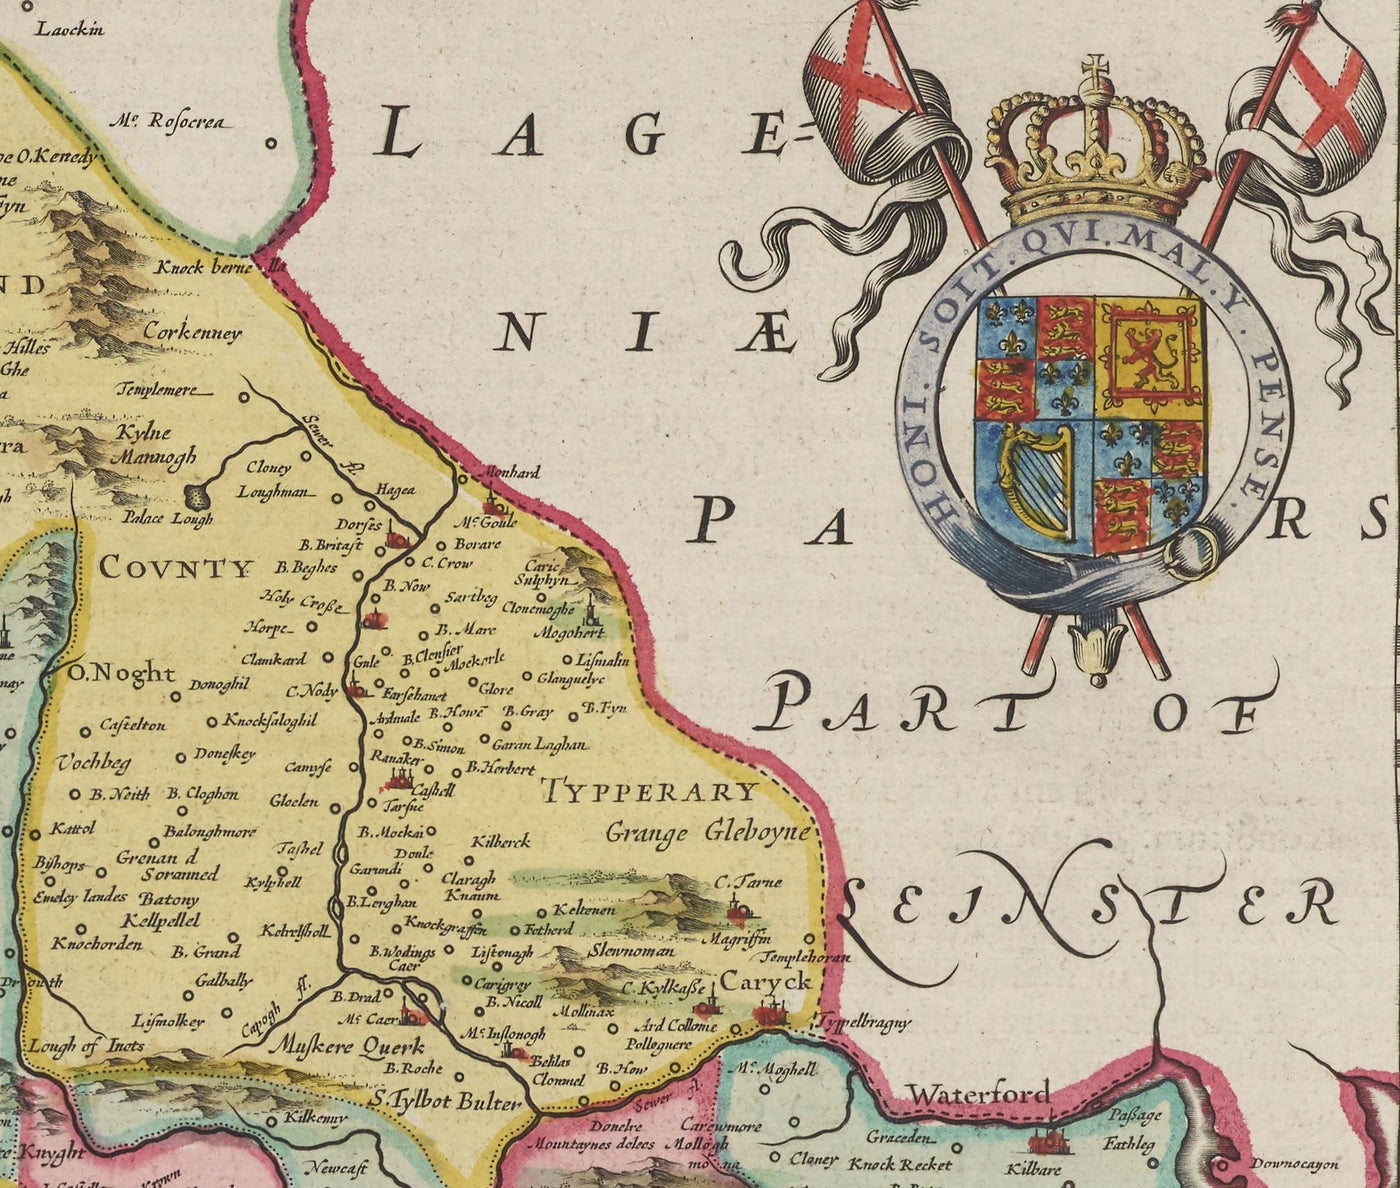 Alte Karte von Münster, Irland 1665 von Joan Blaeu - County Cork, Clare, Kerry, Limerick, Tipperary, Südwesten Eire